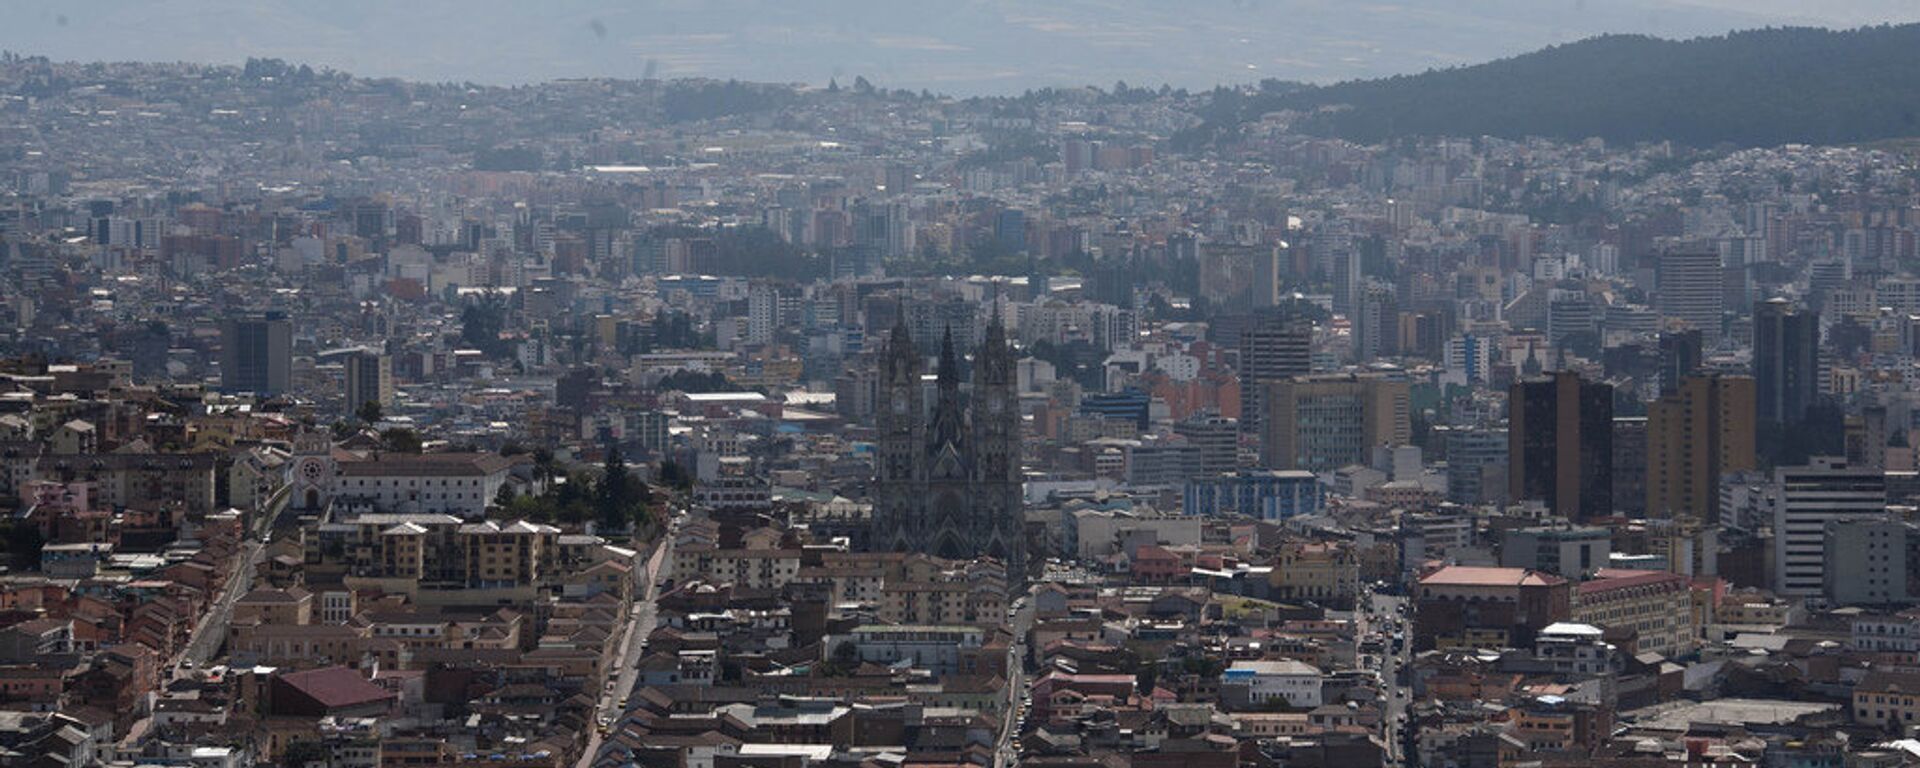 Quito, capital de Ecuador - Sputnik Mundo, 1920, 20.01.2020